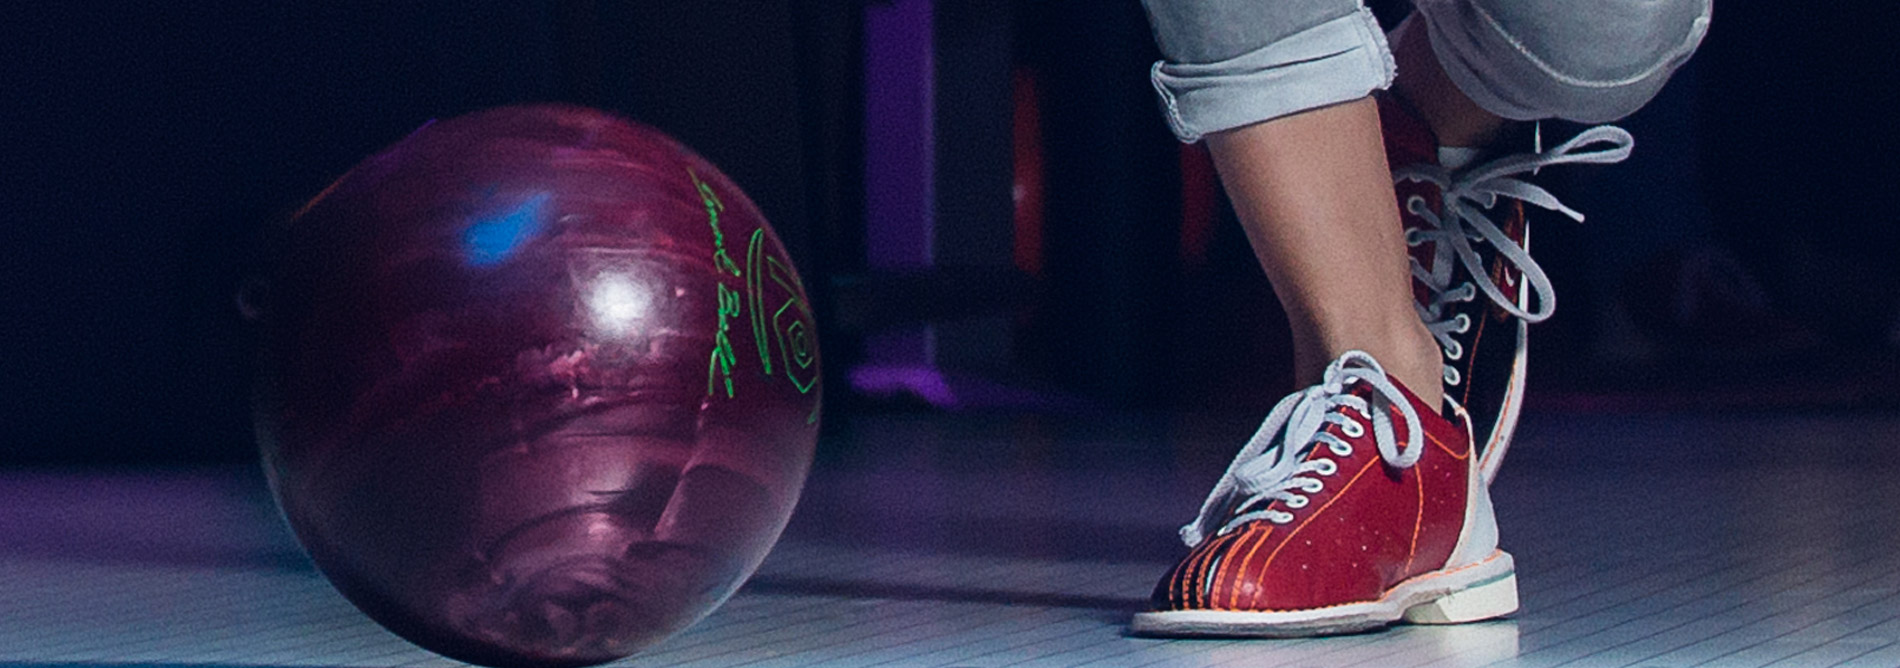 qubicaamf-bowling-house-ball-smart-ball-banner.jpg